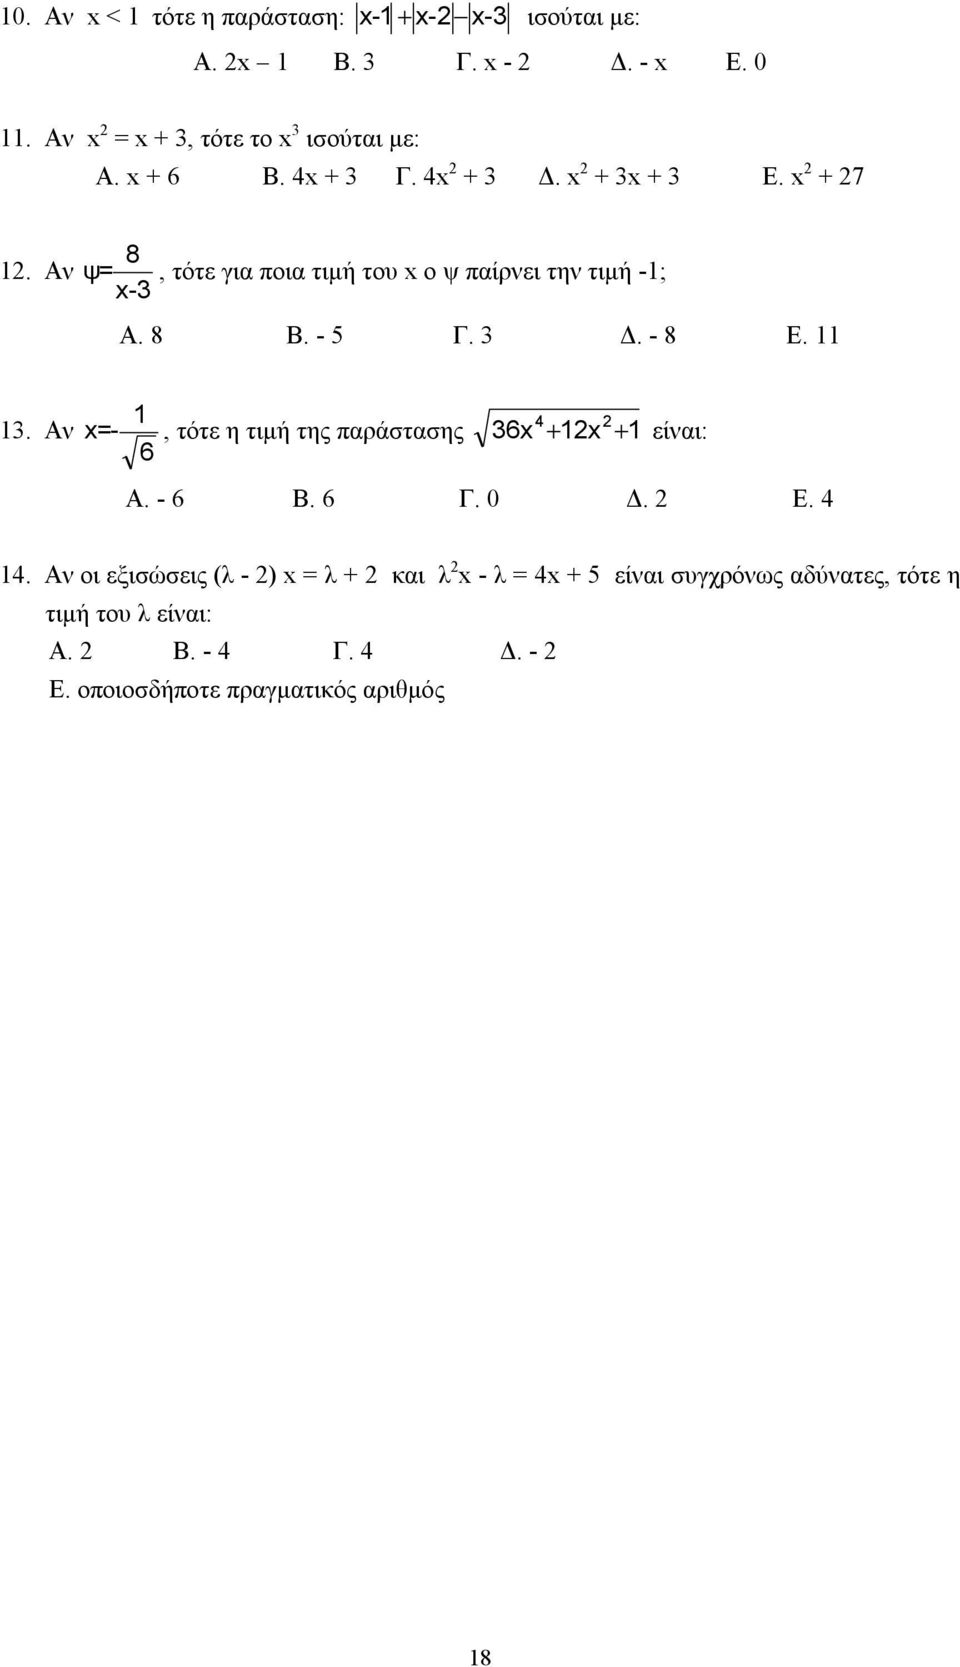 3 Δ. - 8 Ε. 11 13. Αν 1 4 x =-, τότε η τιμή της παράστασης 36x + 1x + 1 είναι: 6 Α. - 6 Β. 6 Γ. 0 Δ. Ε. 4 14.